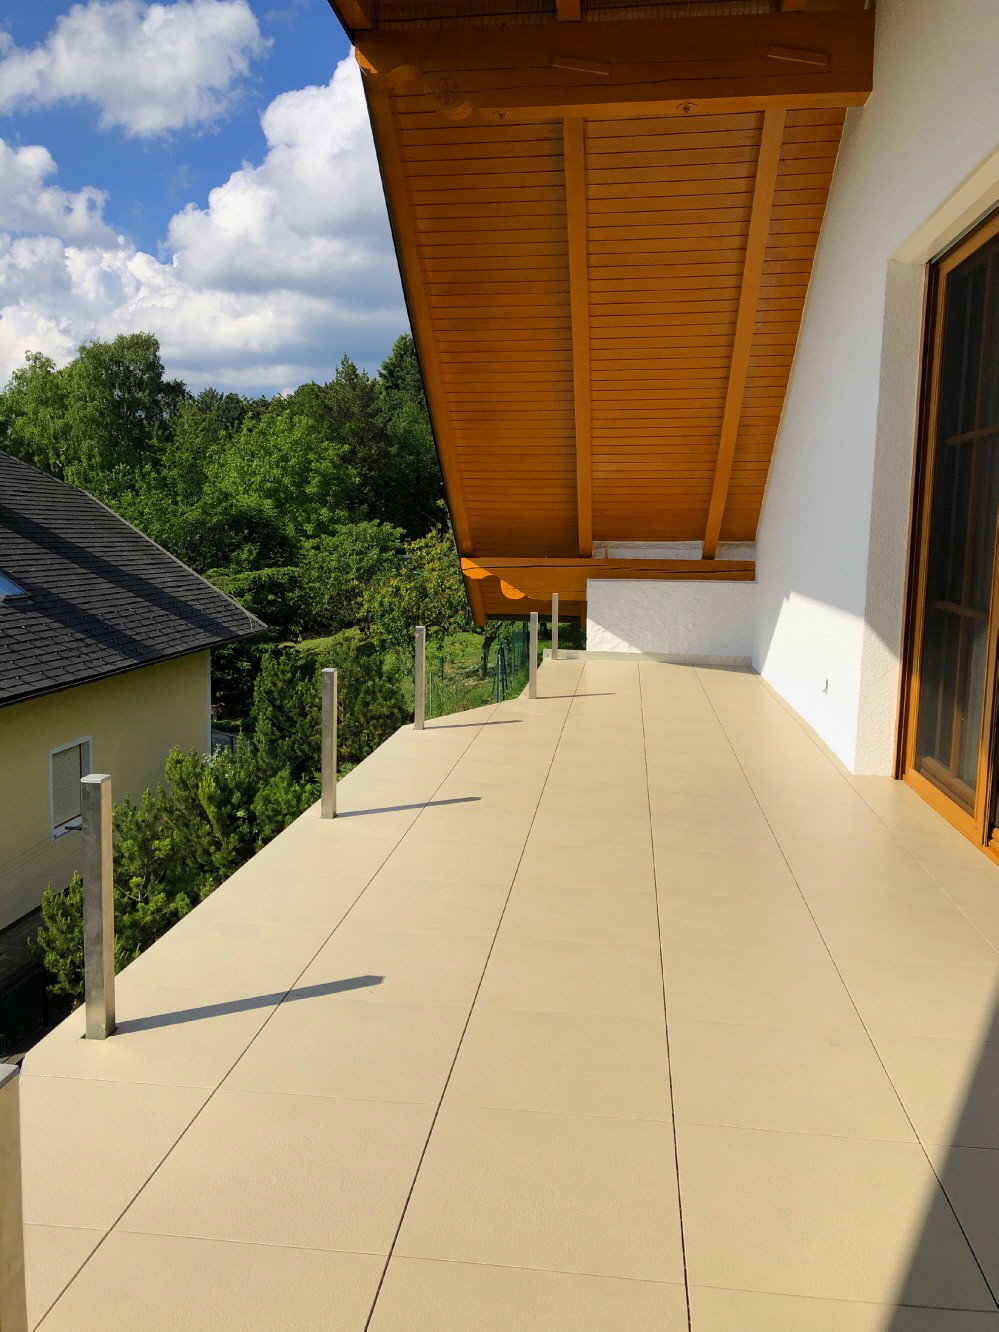 Neuer Aufbau des Giebel-Balkons mit Bodenfliesen Typ ELITE in der Farbe Sand